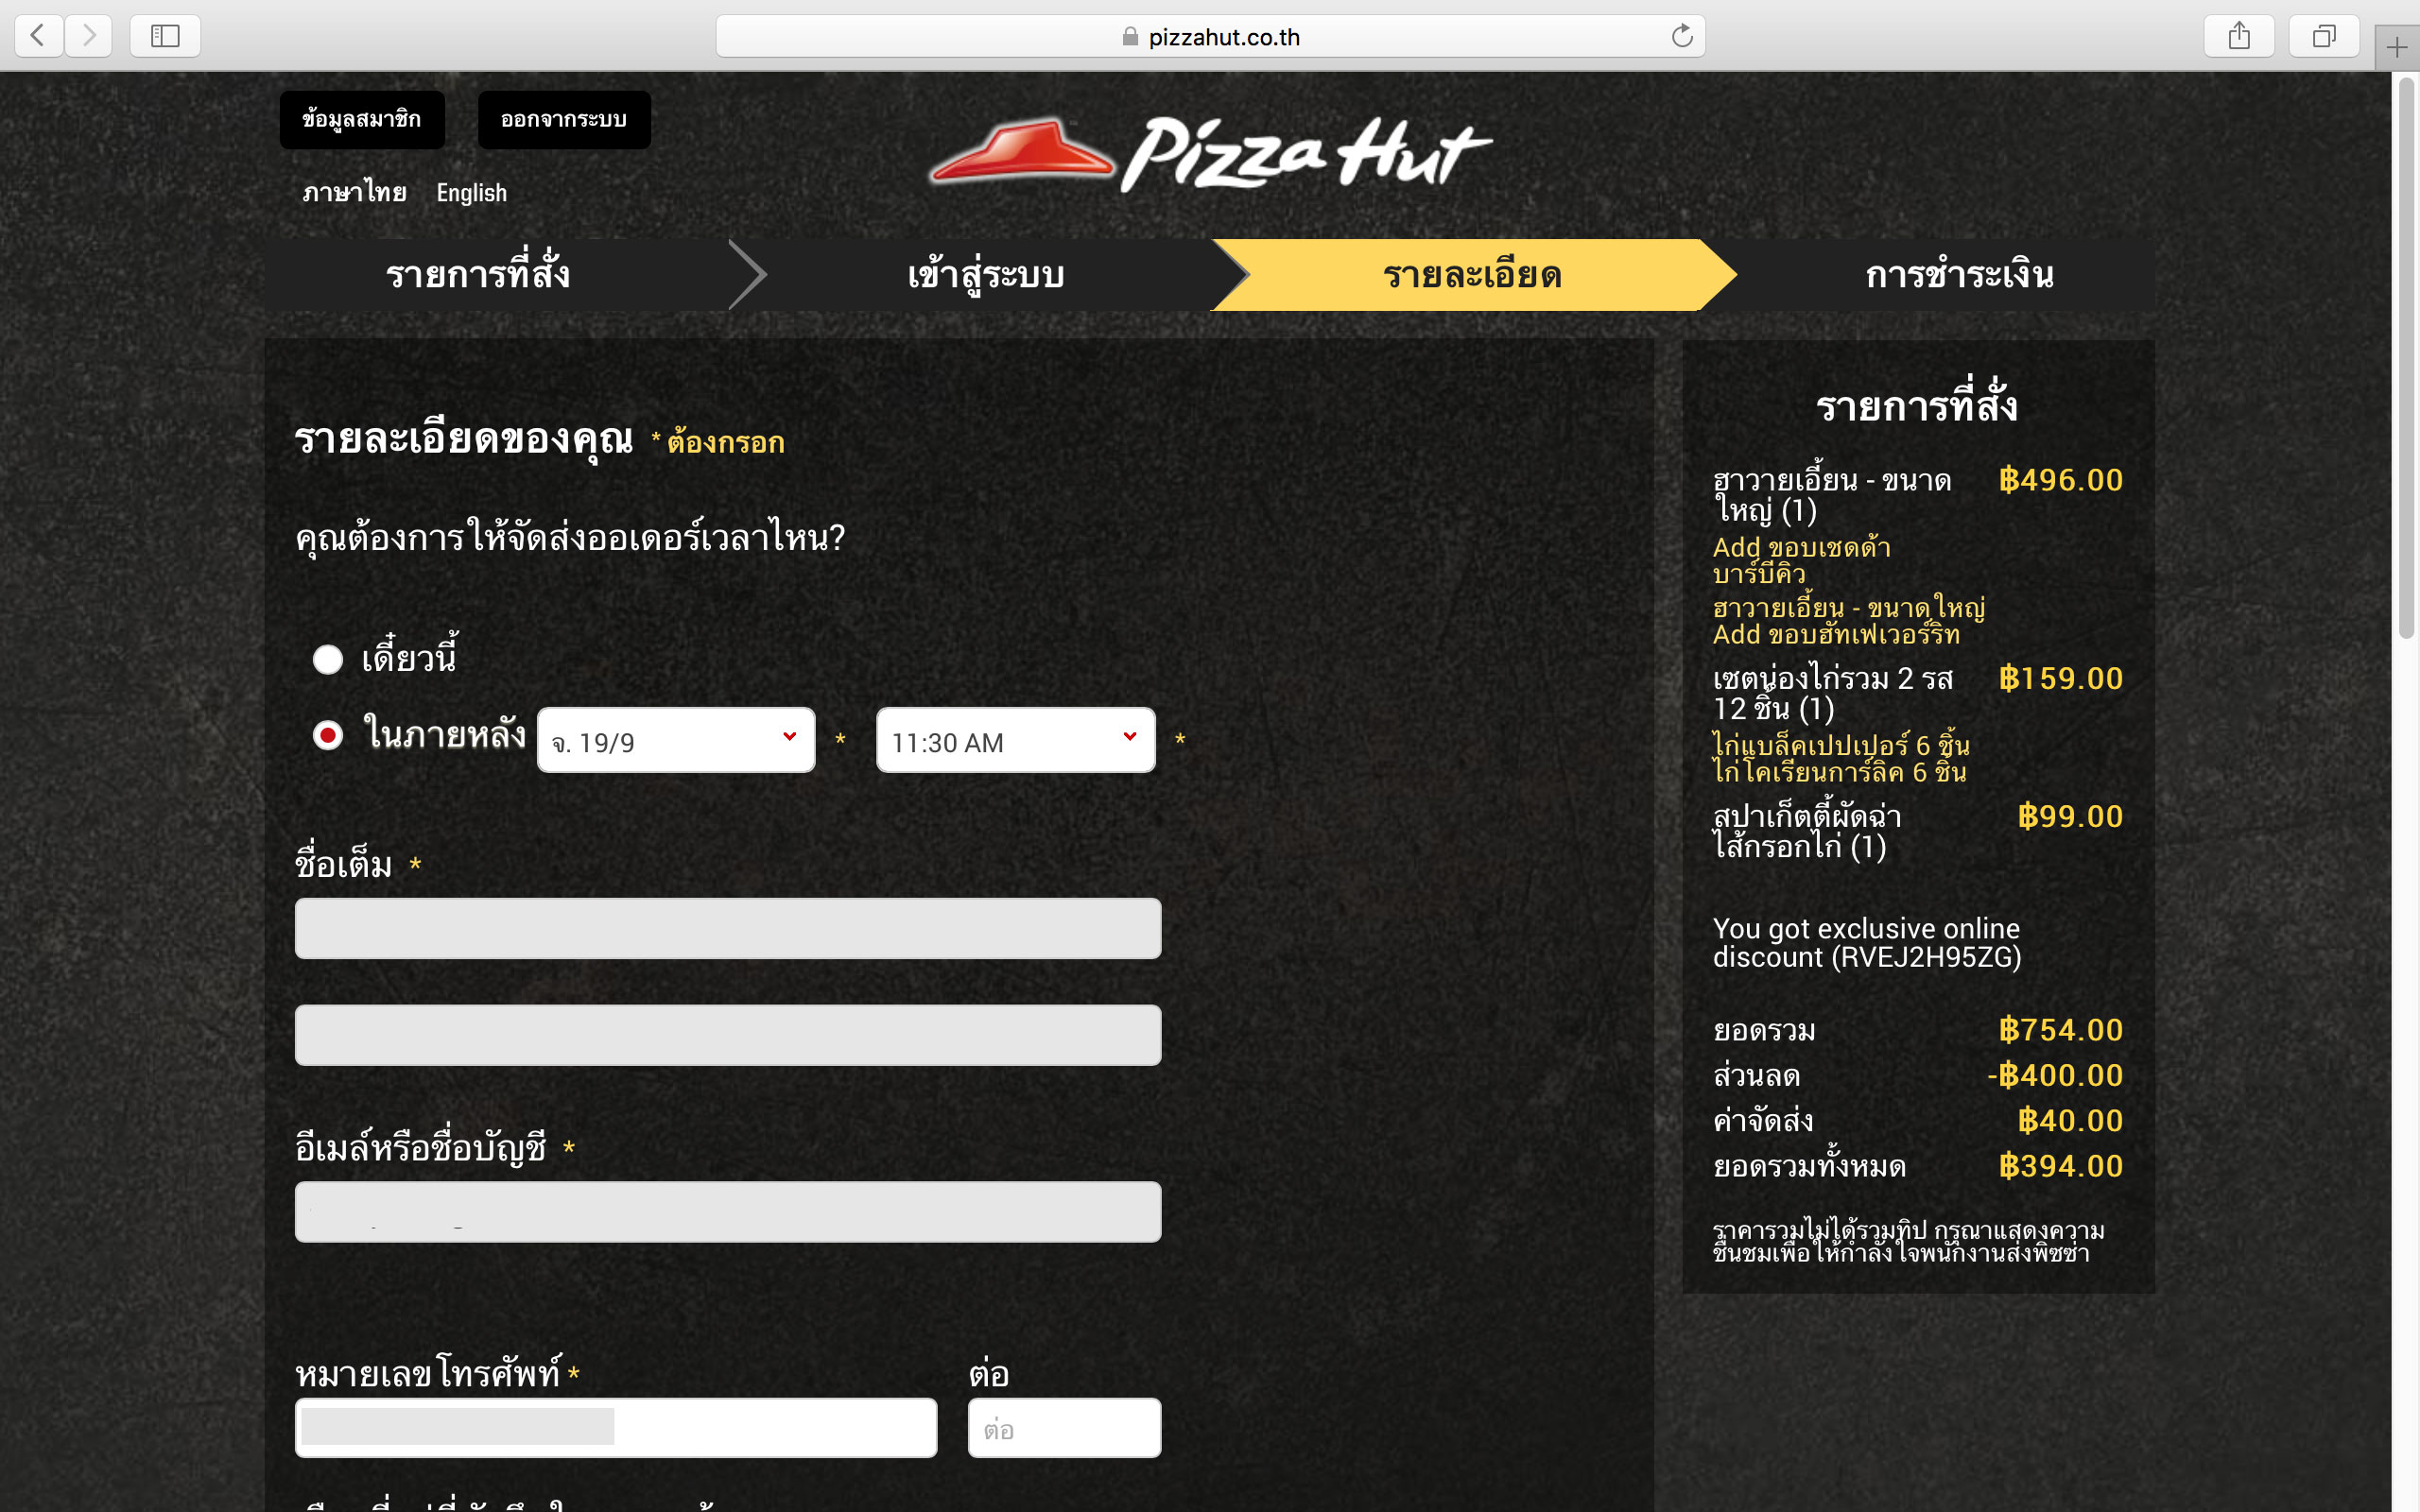 [ตะลุยแหลก] พิซซ่าฮัทสูตรใหม่ (Pizza Hut) อร่อยกว่าเดิม #อยากกินต้องกินให้สุด